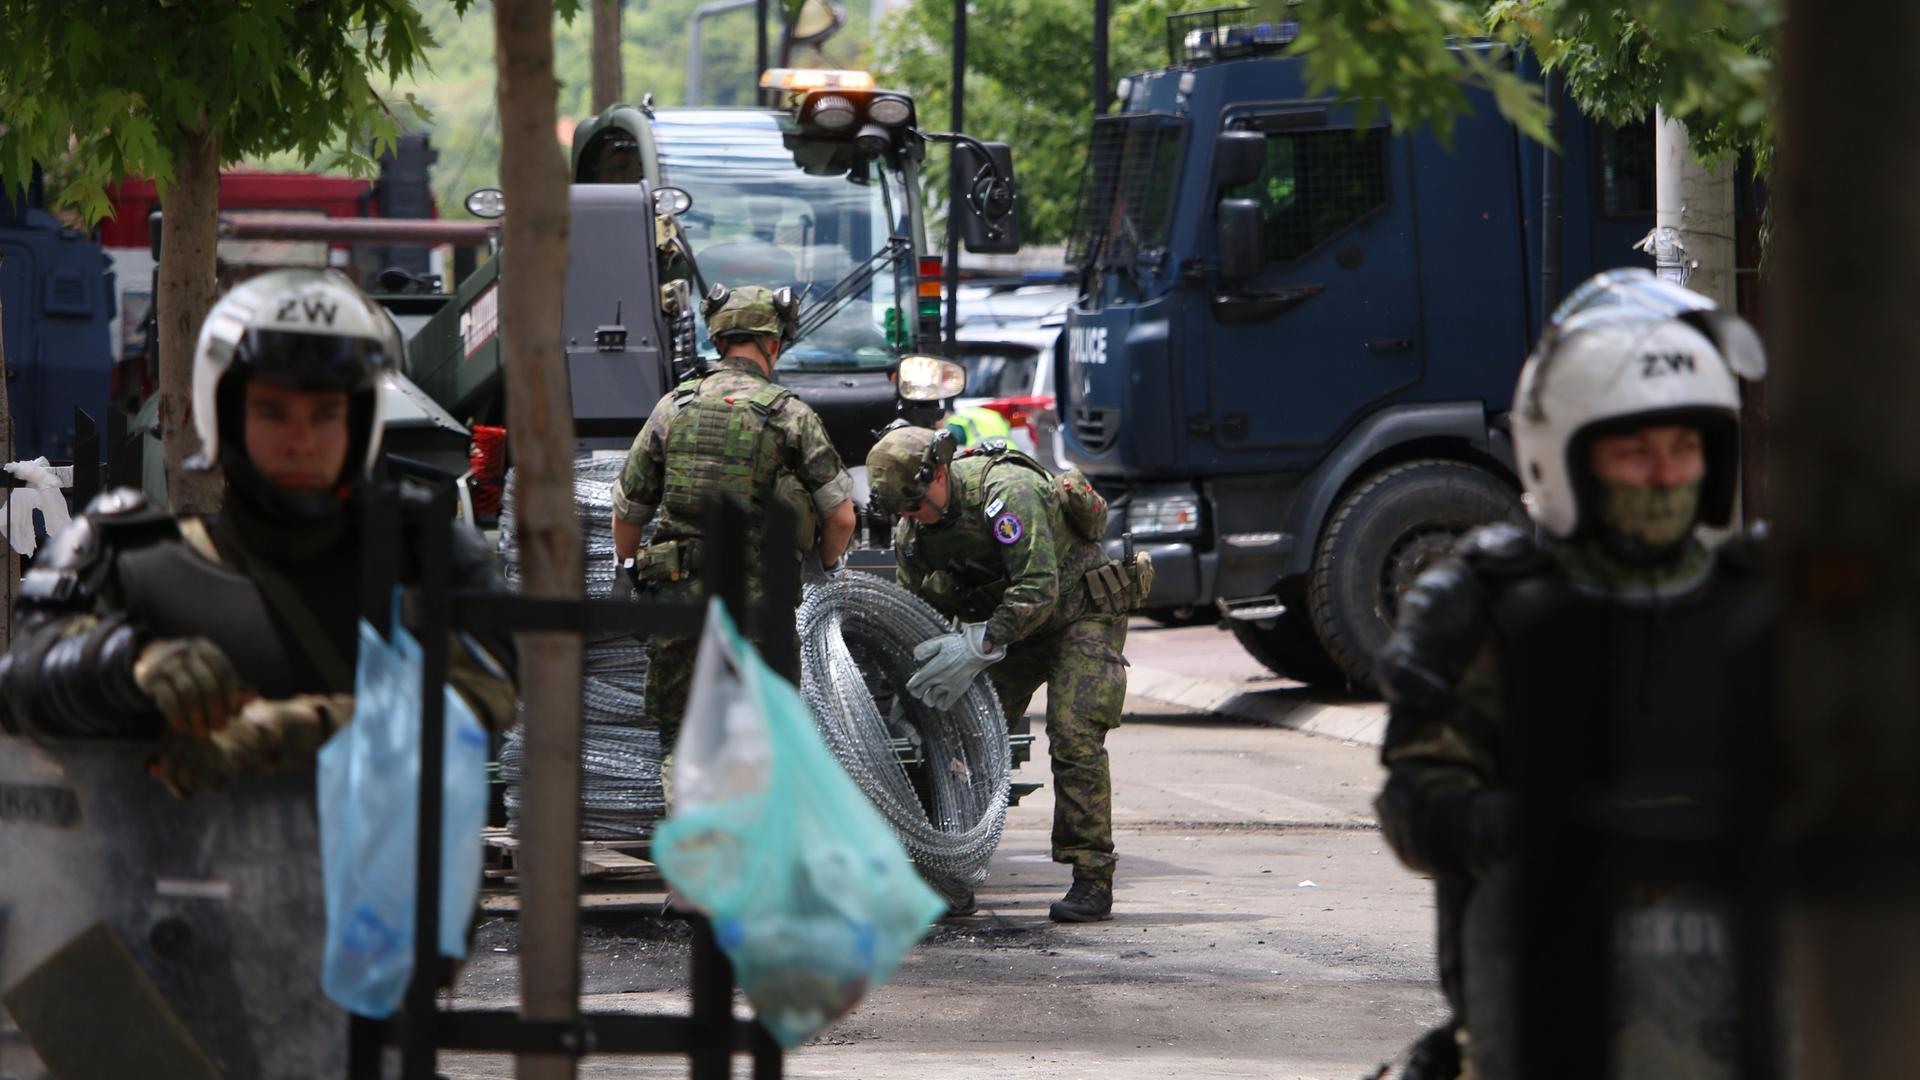 Zwischen  lokalen Polizeikräften sind KFOR Soldaten in Tarnuniformen zu sehen, die Natodraht ausrollen.